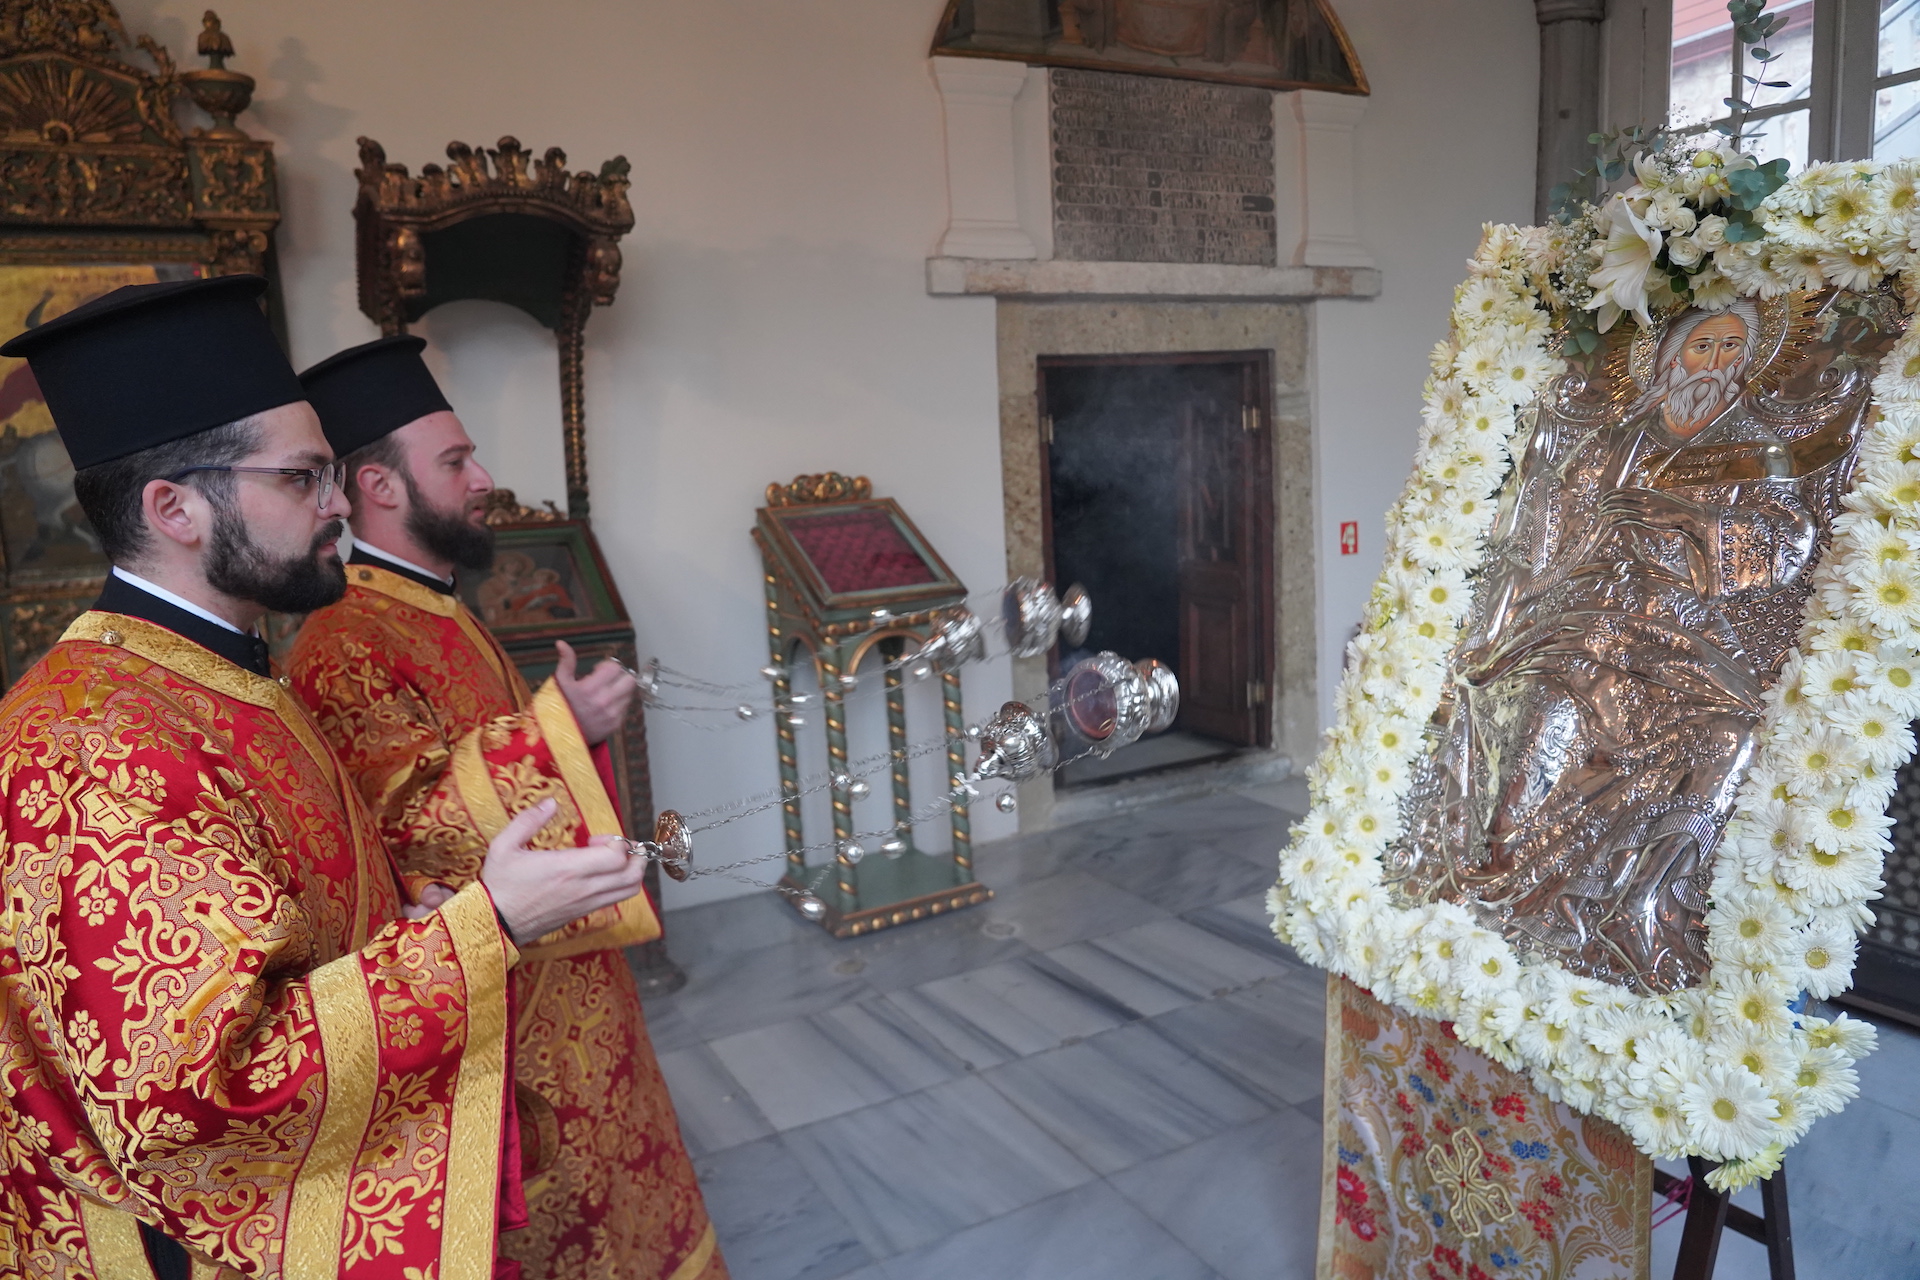 Το Οικουμενικό Πατριαρχείο τίμησε τον ιδρυτή του, Άγιο Απόστολο Ανδρέα τον Πρωτόκλητο